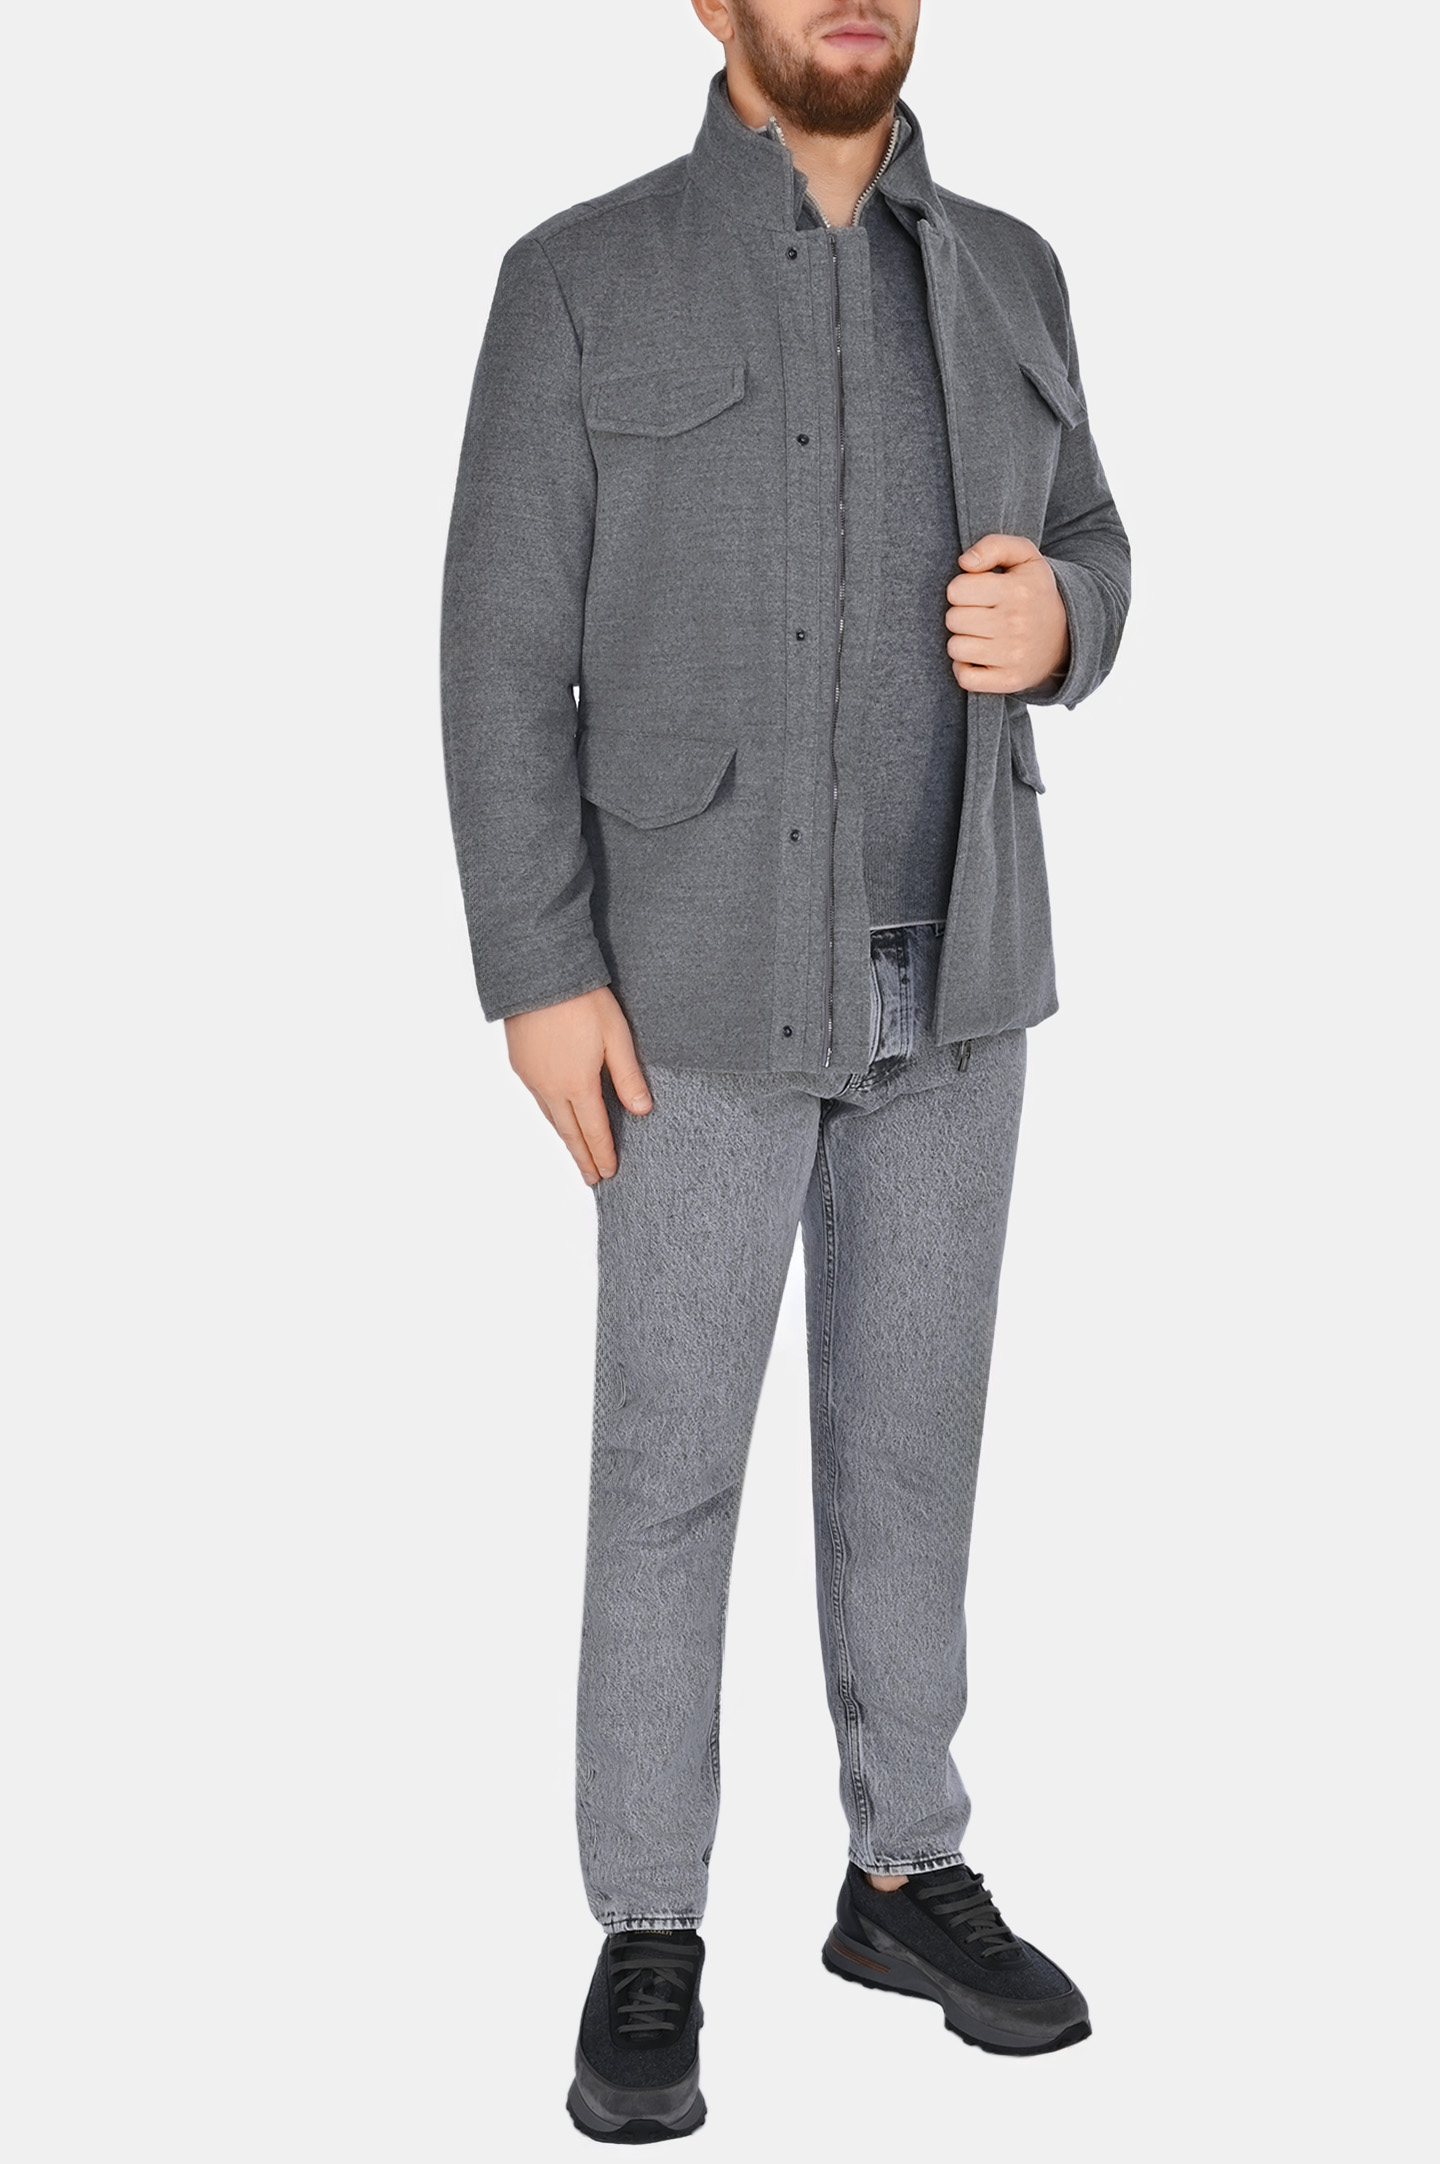 Куртка DORIANI CASHMERE A373, цвет: Серый, Мужской